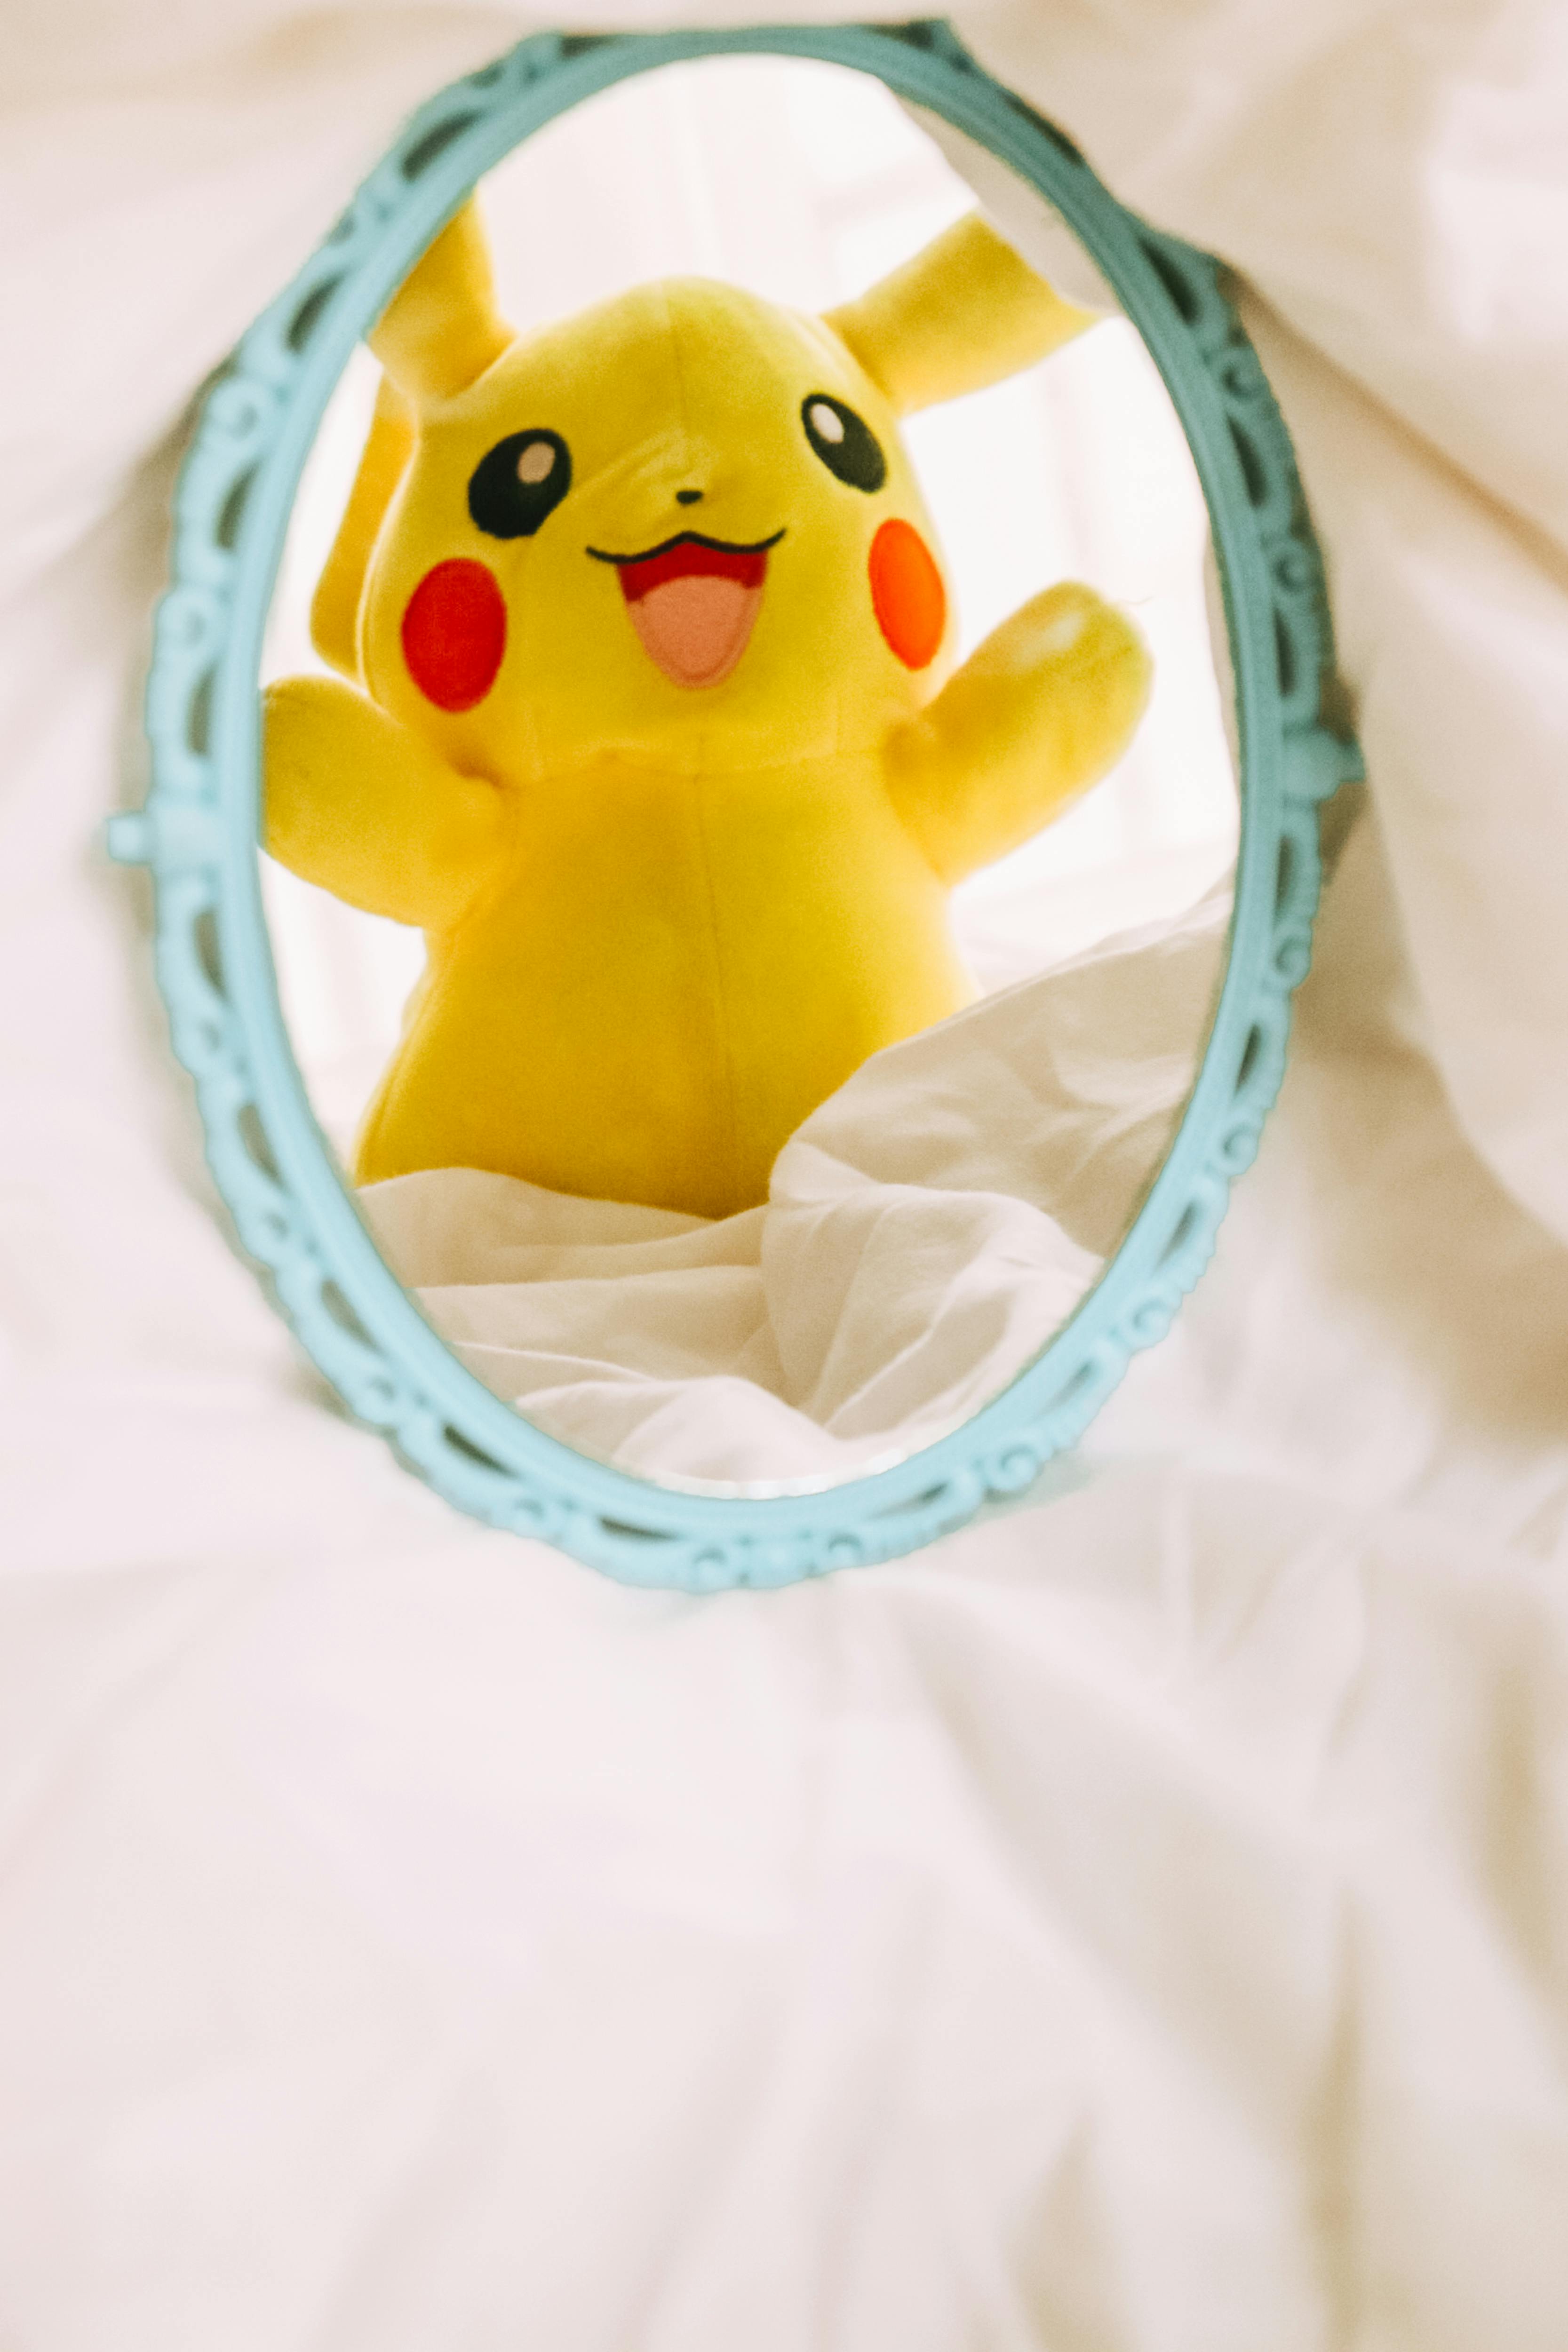 Pikachu Pokémon Personagem Desenho - Imagens grátis no Pixabay - Pixabay